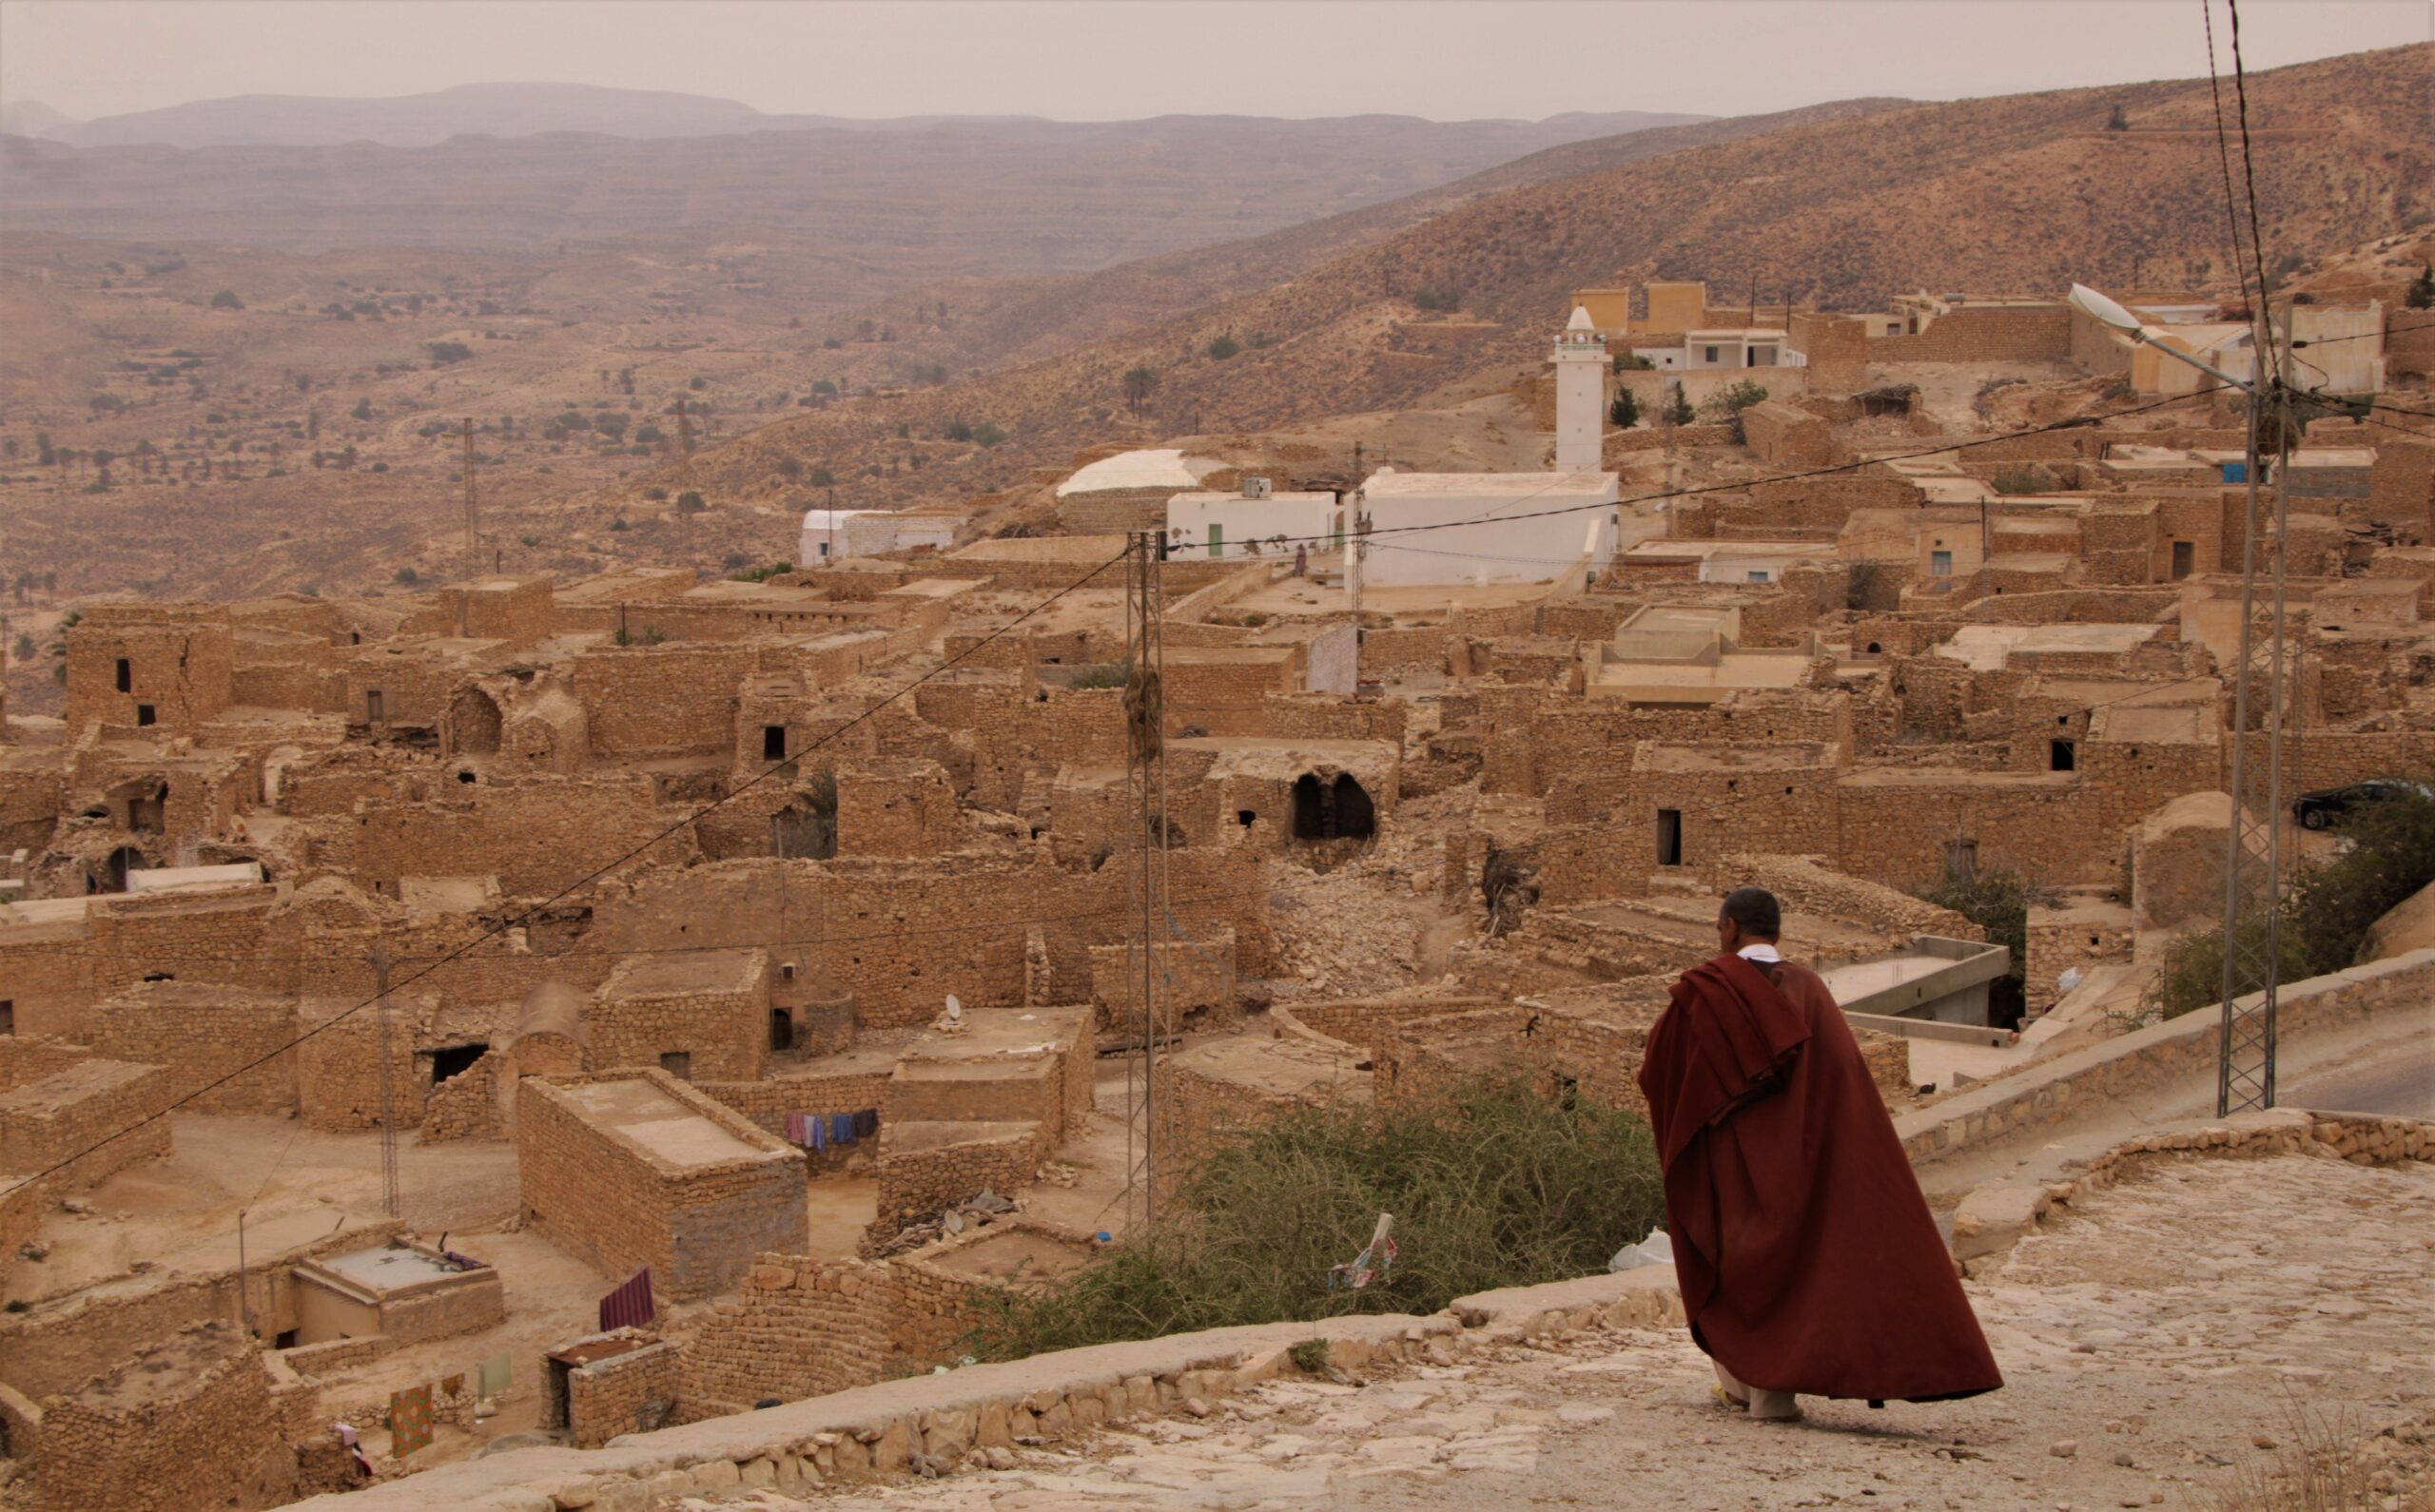 Choosing Ancienne Over Avantgard With a Journey Through the Dahar, Tunisia